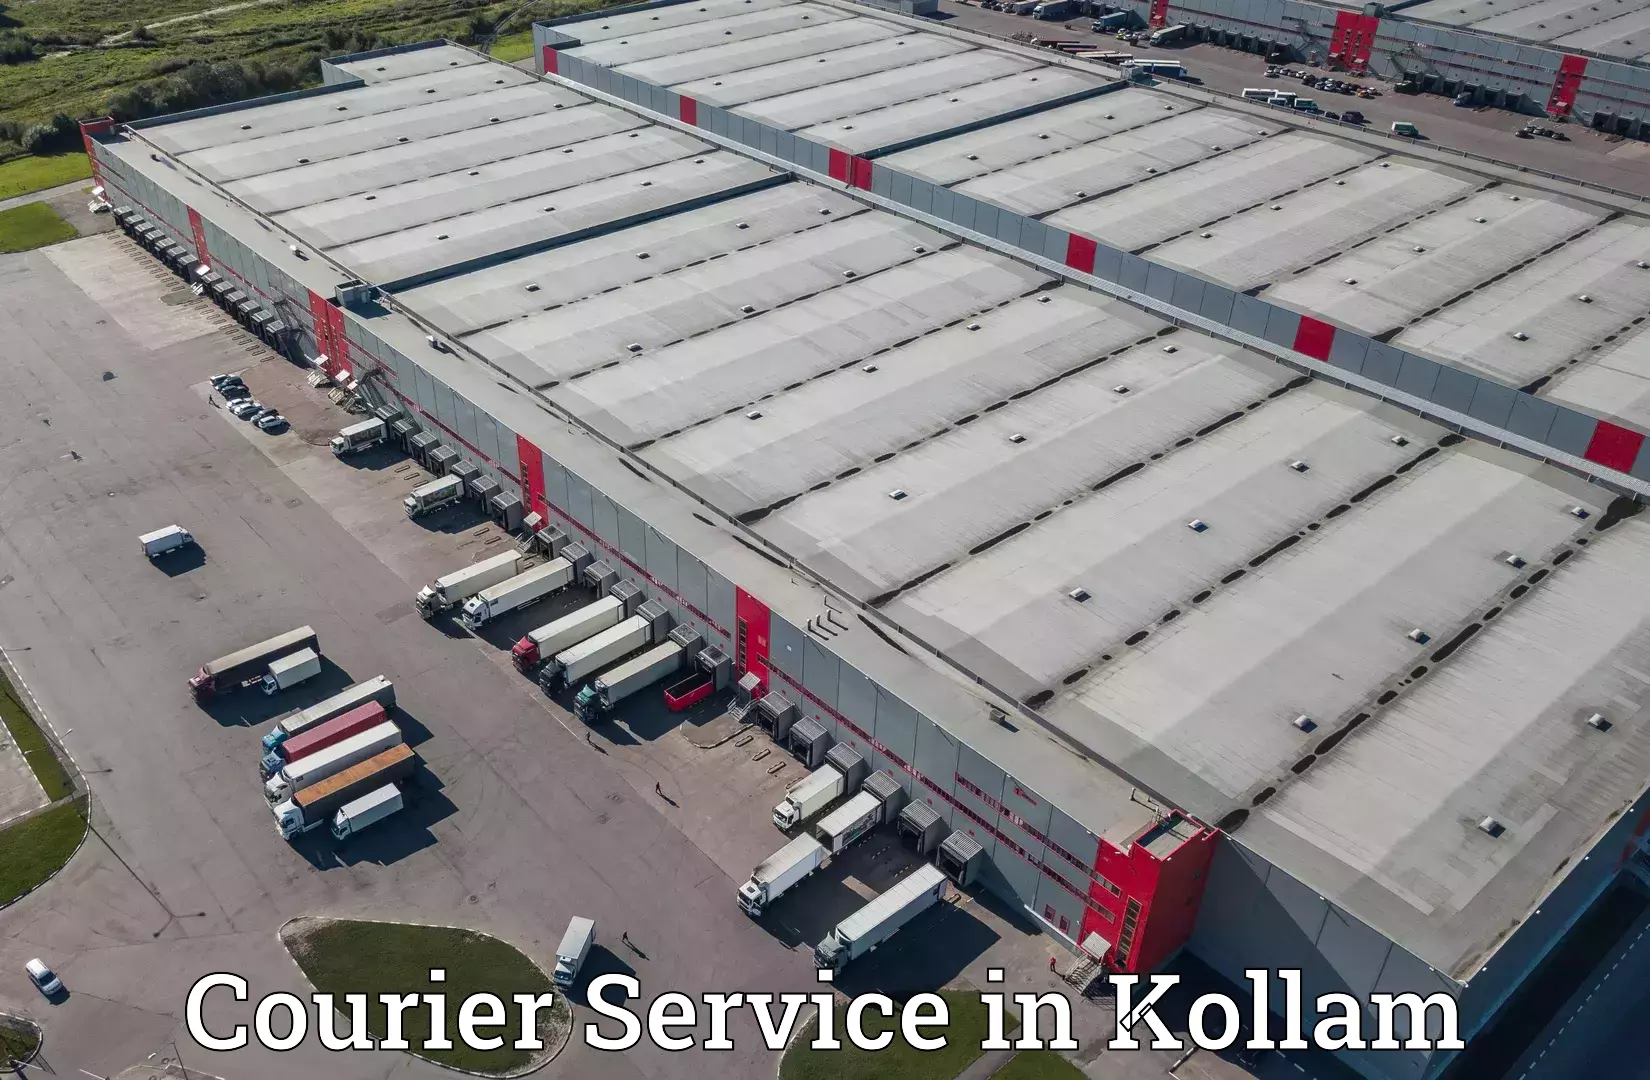 Efficient parcel transport in Kollam